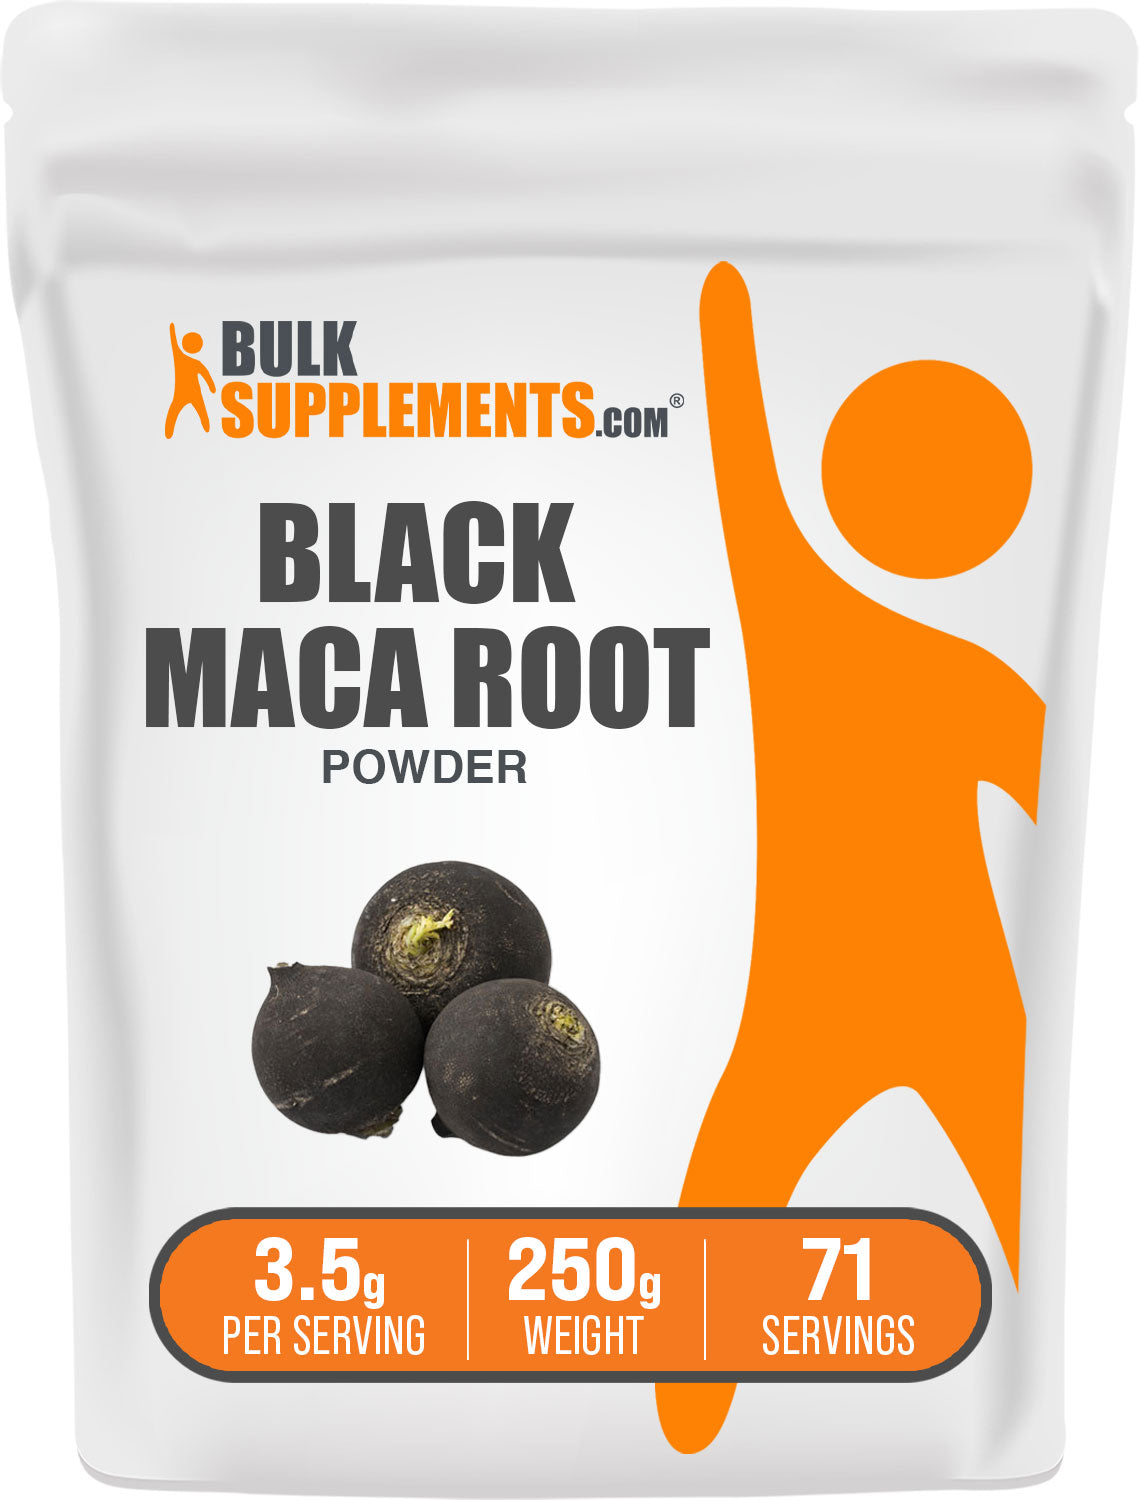 250g bag of black maca